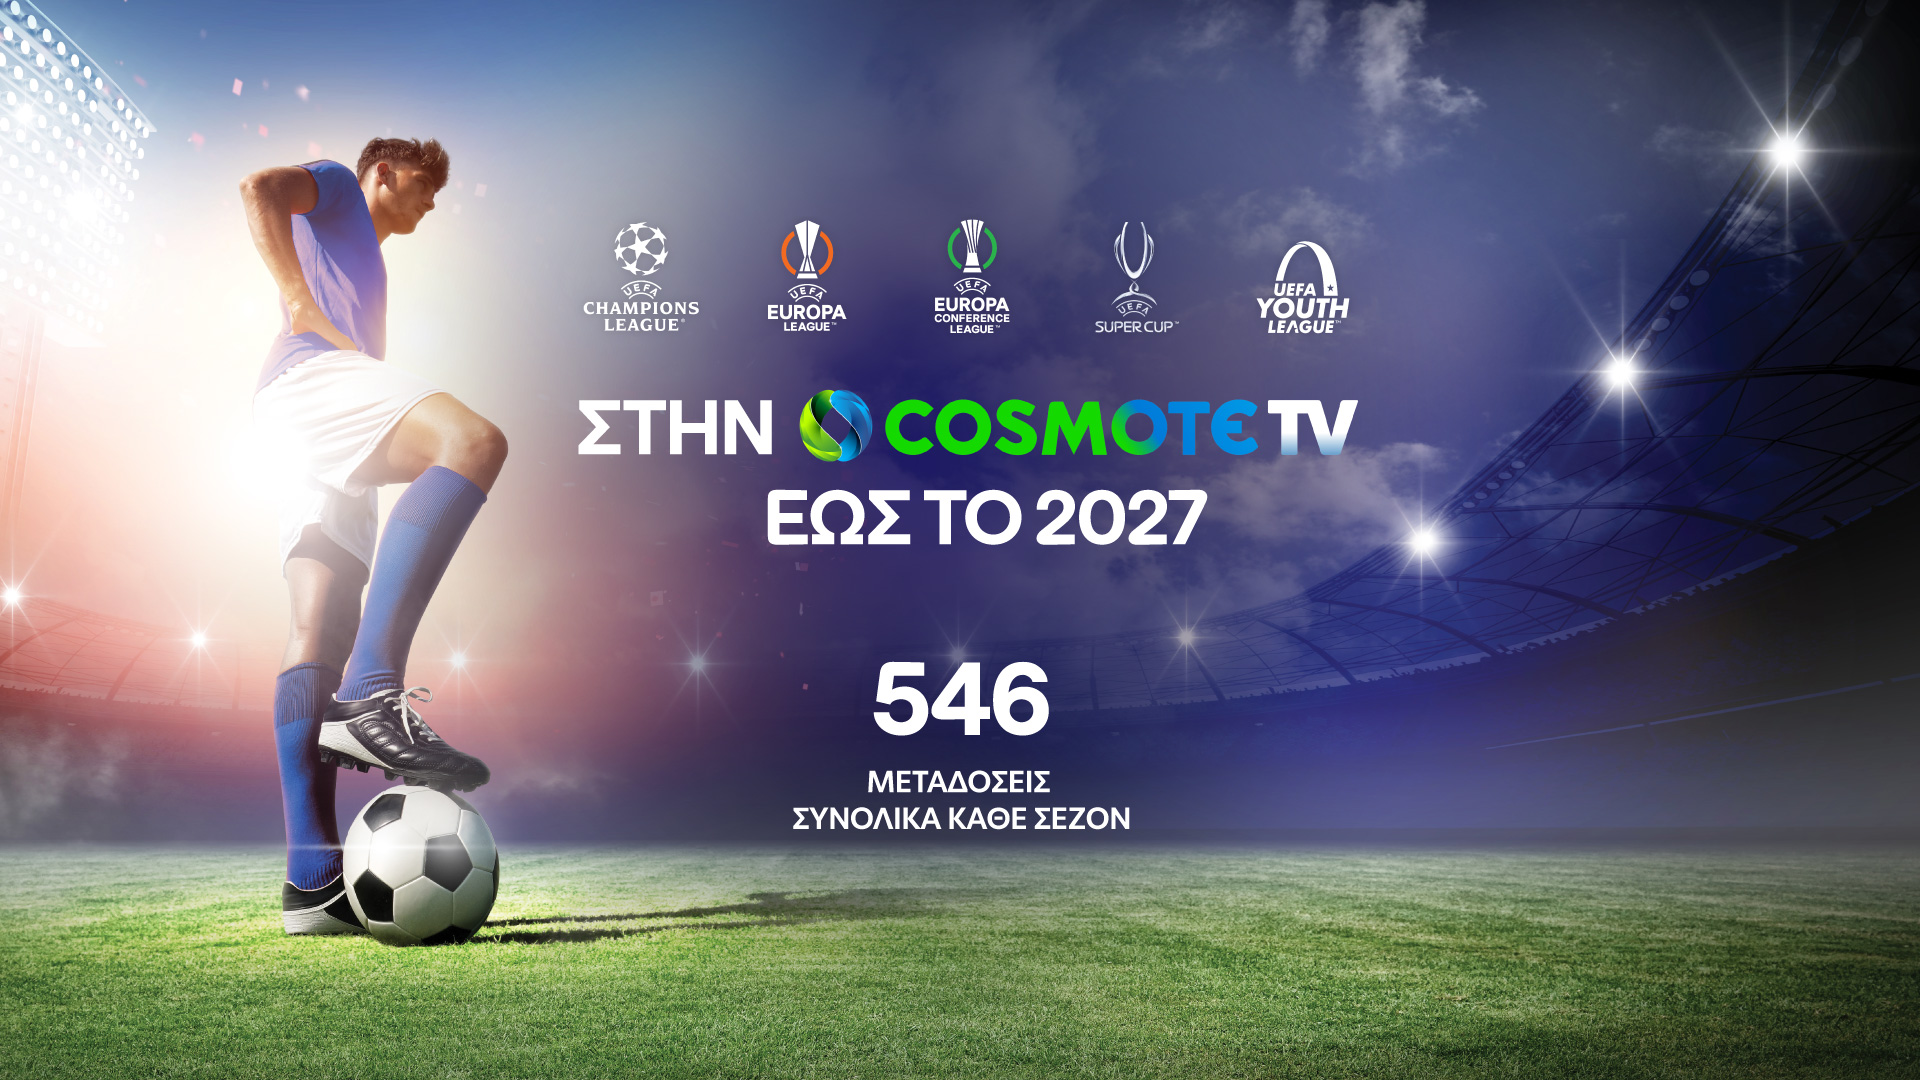 Στην COSMOTE TV έως το 2027 τα UEFA Champions League, UEFA EuropaLeague και UEFA Conference League